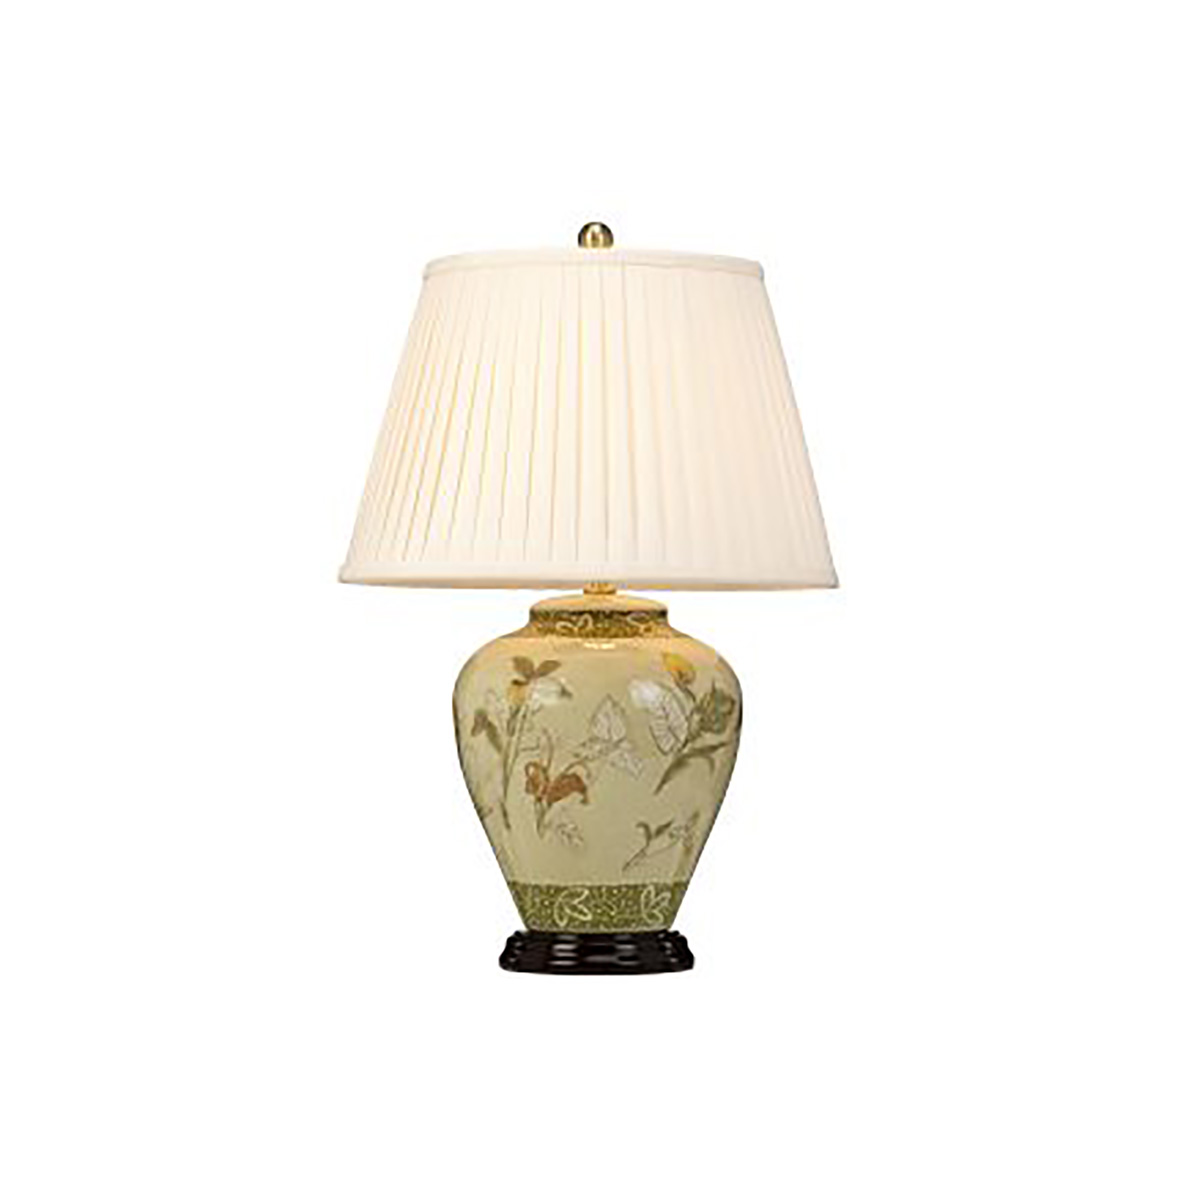 Настольная лампа ARUM-LILY-TL. Бренд: Elstead Lighting. Настольные лампы